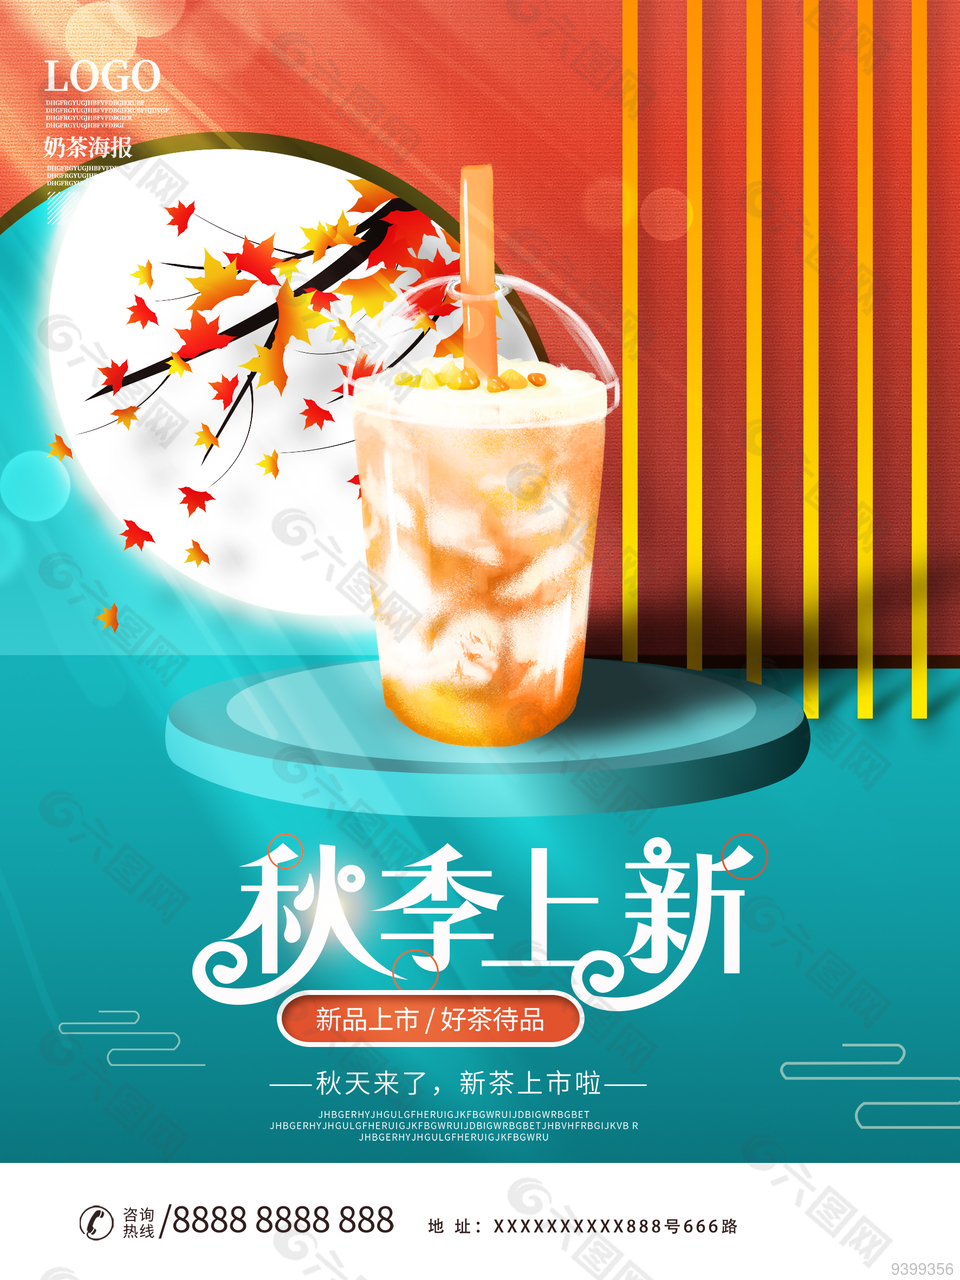 奶茶新品上市宣传海报